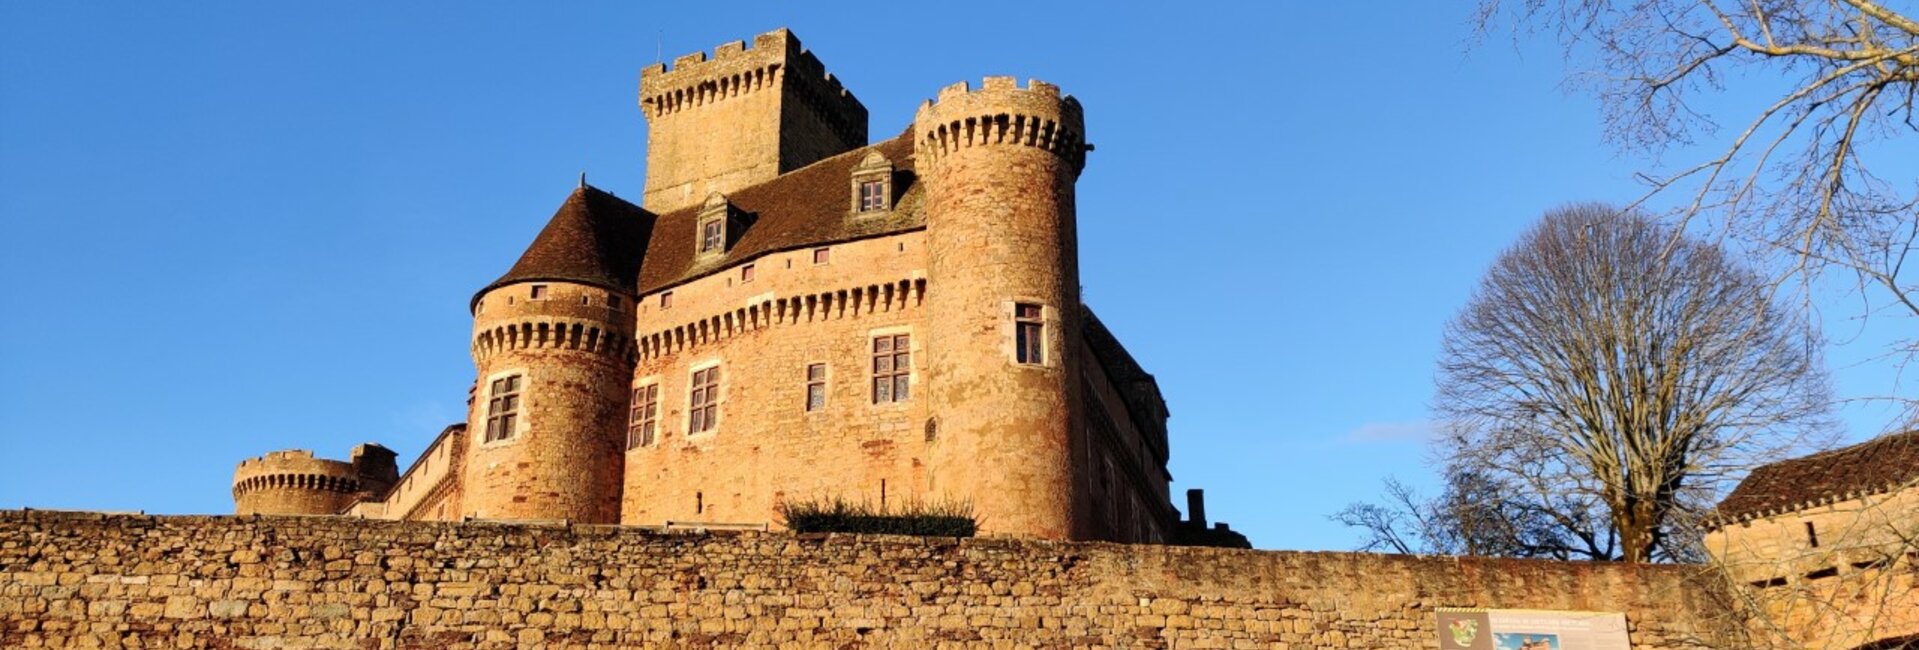 Le château de Prudhomat (46) Lot occitanie